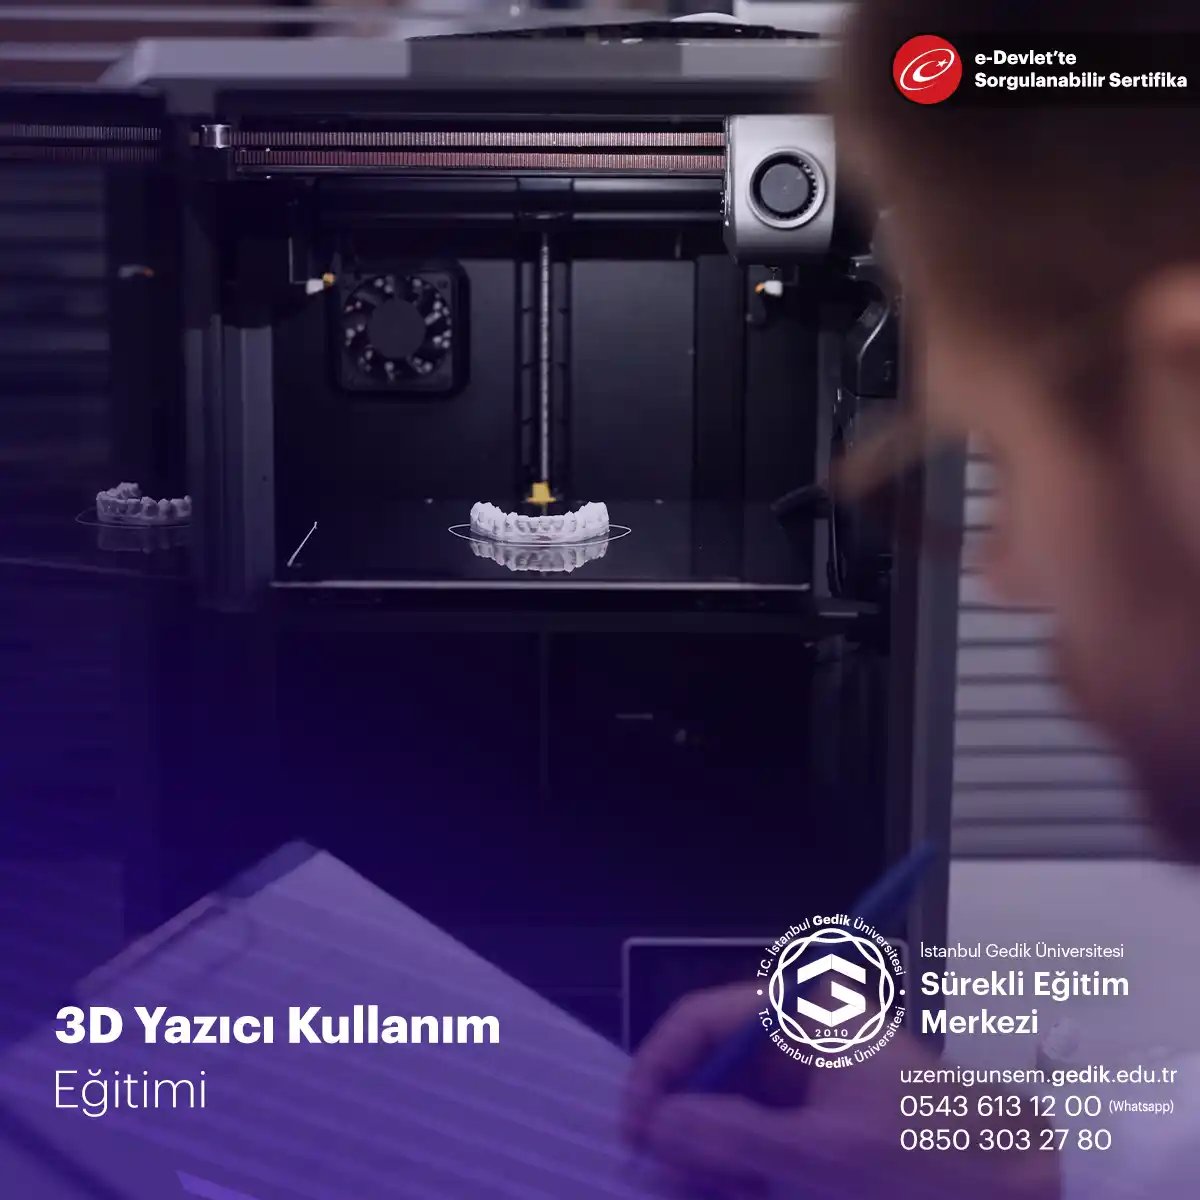 3D Yazıcı Kullanım Eğitimi Sertifika Programı